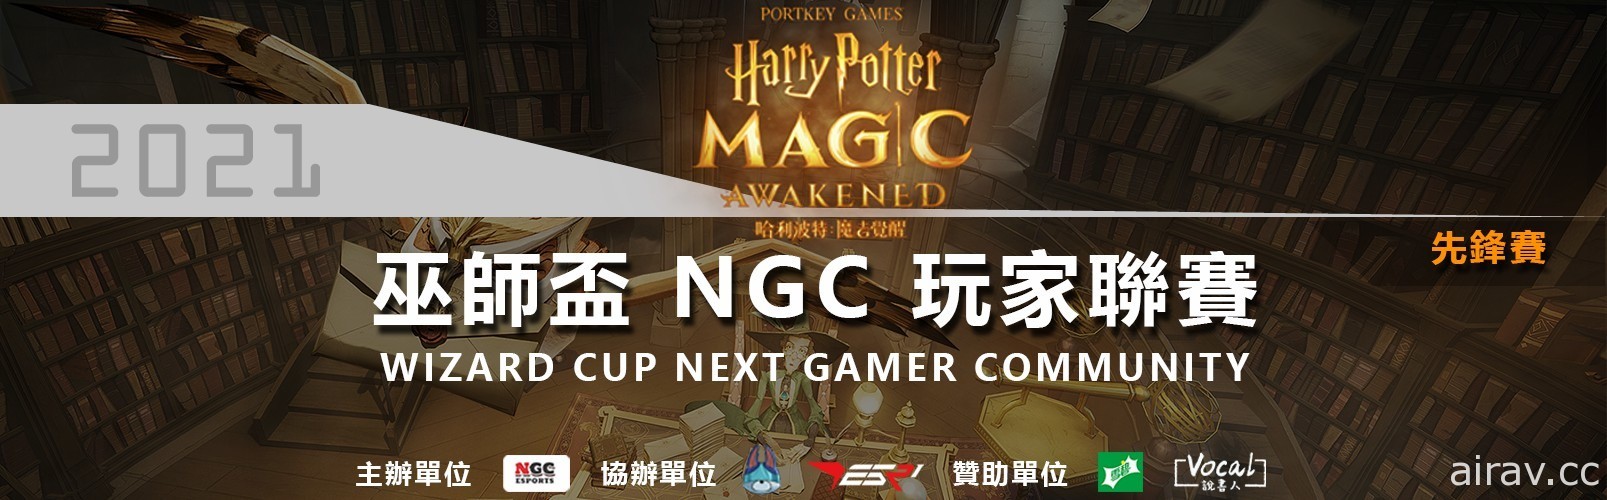 《哈利波特魔法觉醒》巫师杯 NGC 玩家联赛总决赛完美落幕